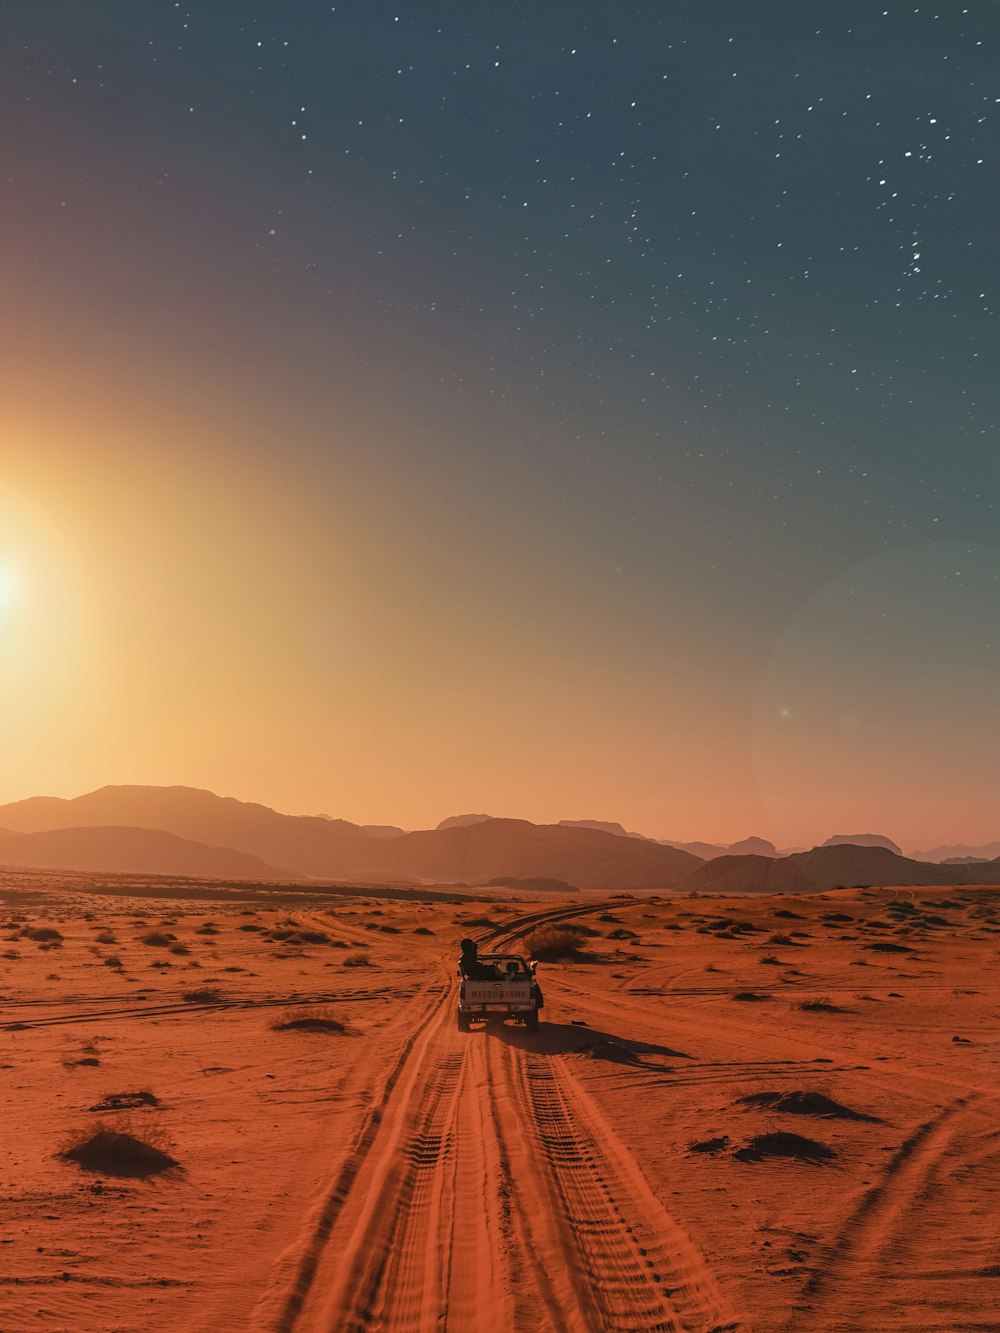 black car on desert during daytime